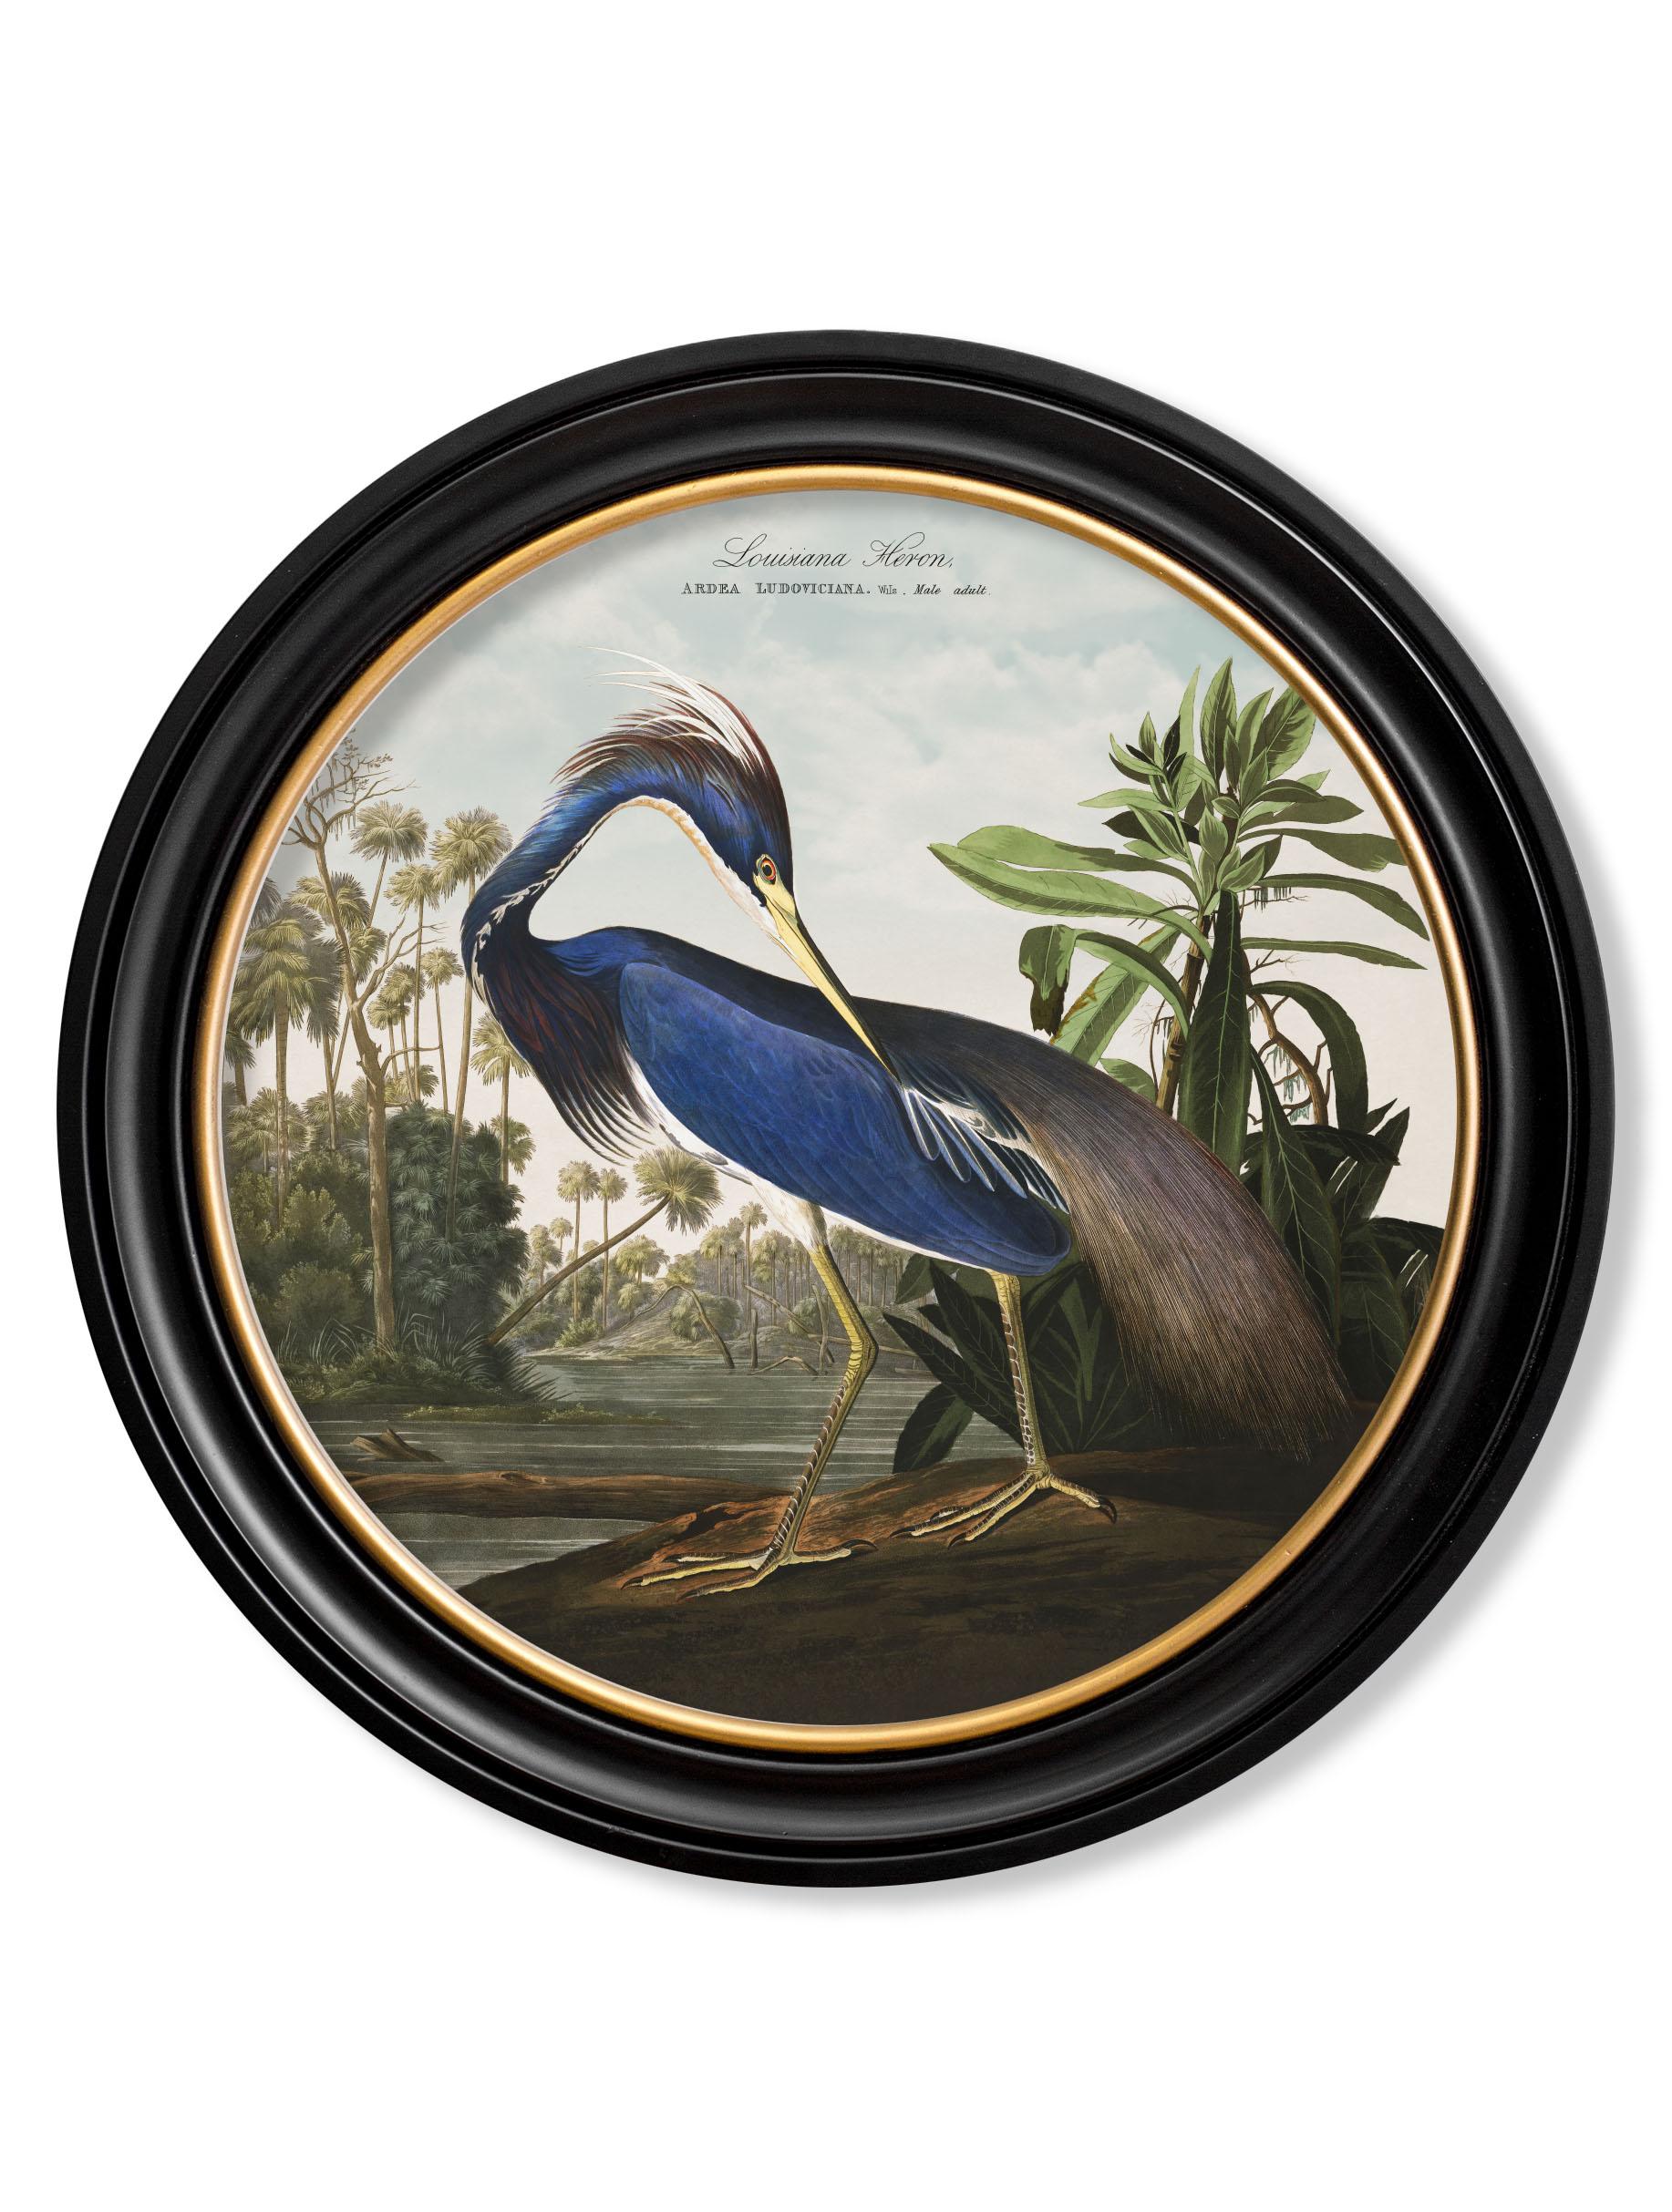 Dies ist ein digital überarbeiteter Druck eines Louisiana-Reihers nach einem handkolorierten Druck von Audubon Birds of America, der ursprünglich aus den 1800er Jahren stammt

Drucke dieses Stils wurden ursprünglich in Schwarz-Weiß gedruckt und